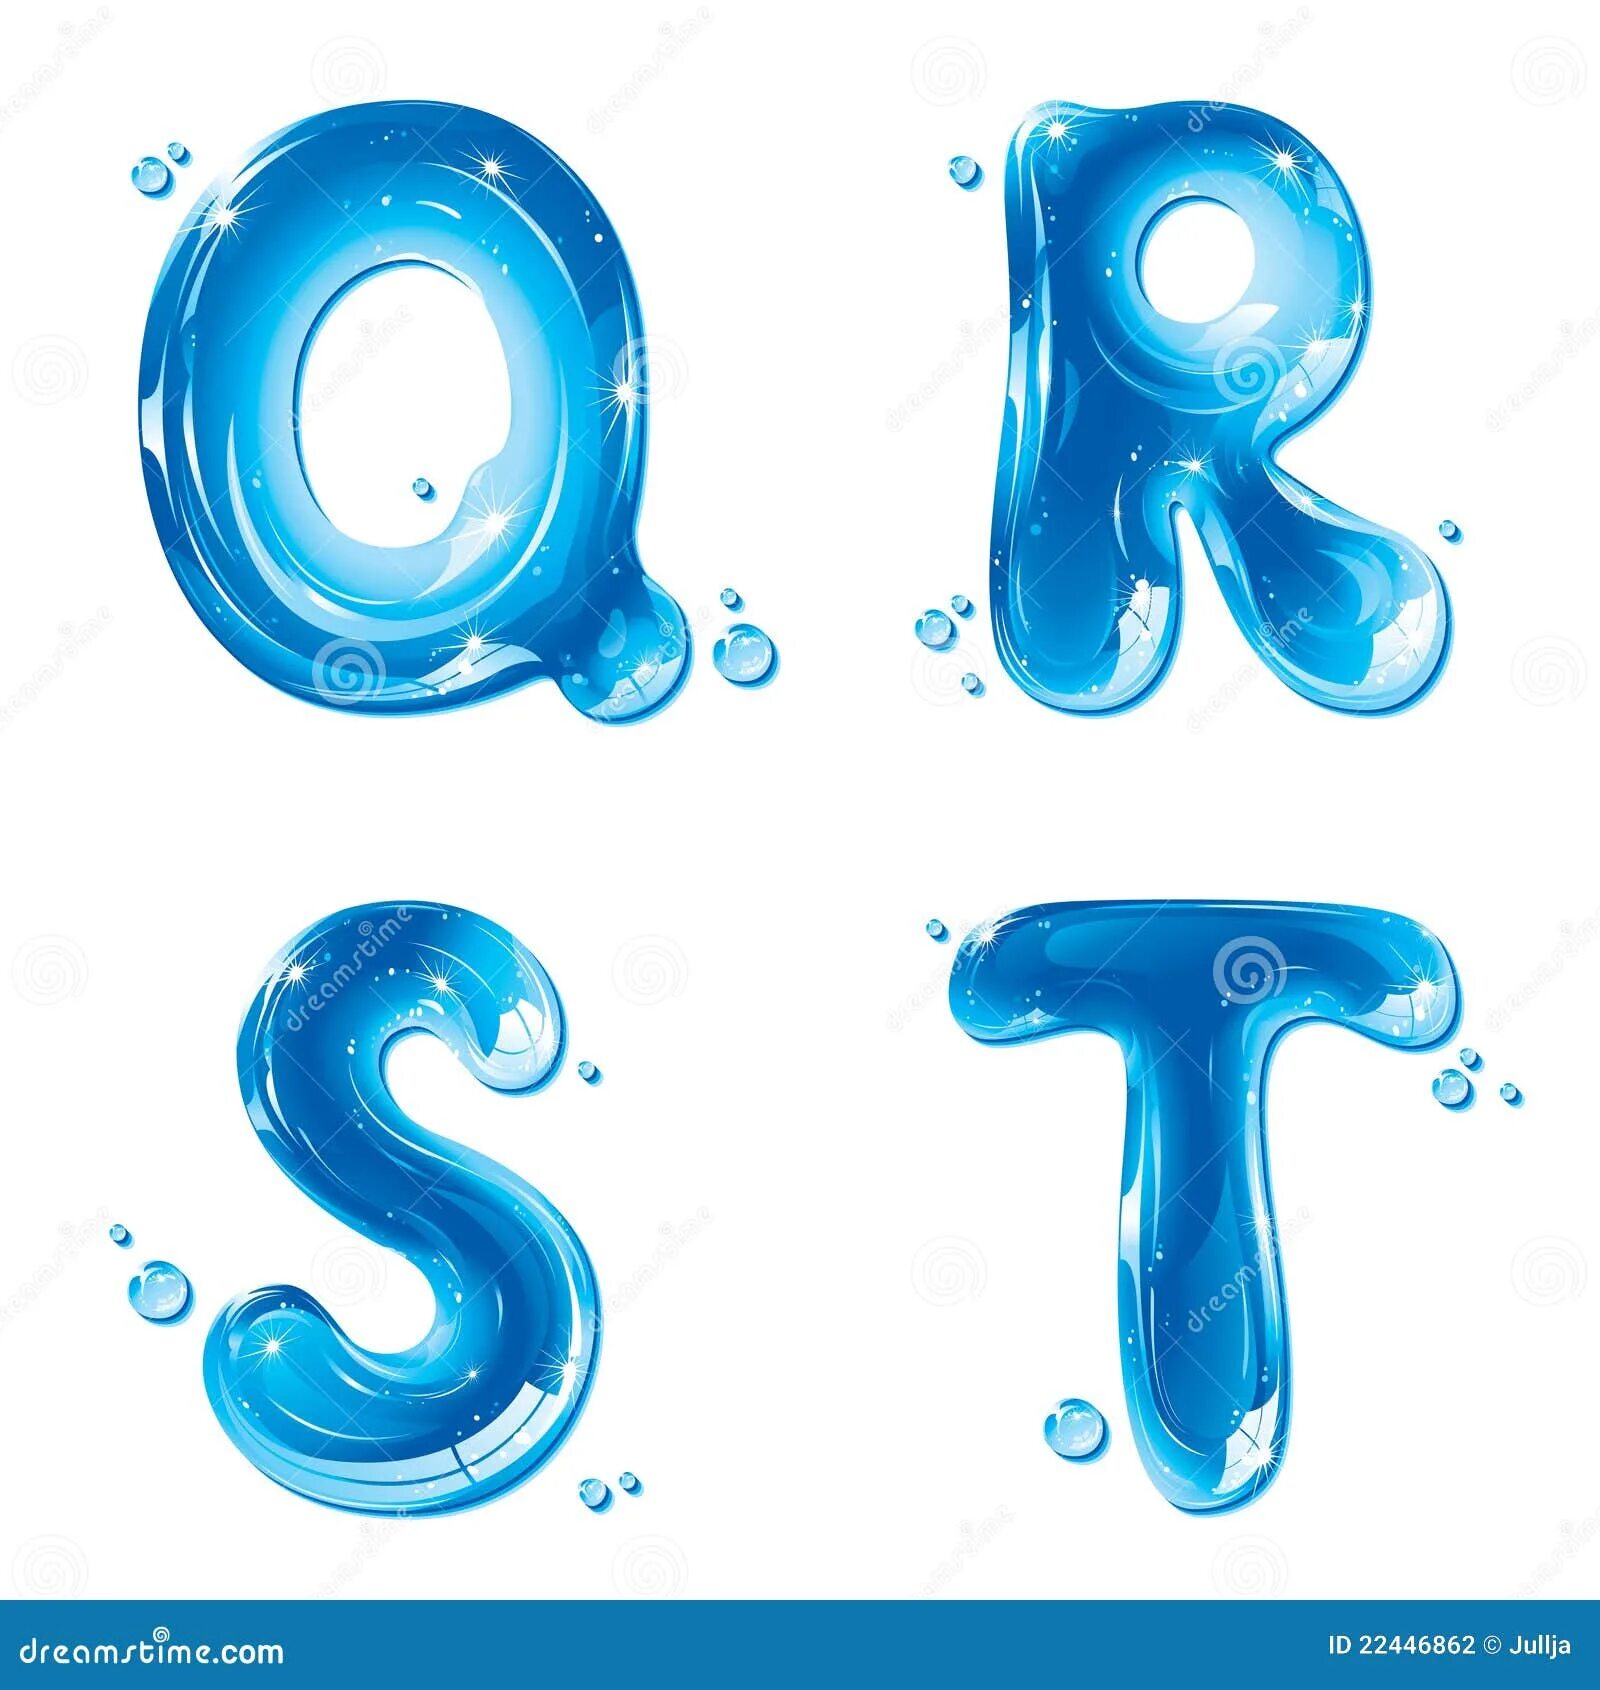 Водяные буквы. Буквы из воды. Буквы из воды в фотошопе. Красивые буквы с водой. Буквы капли воды